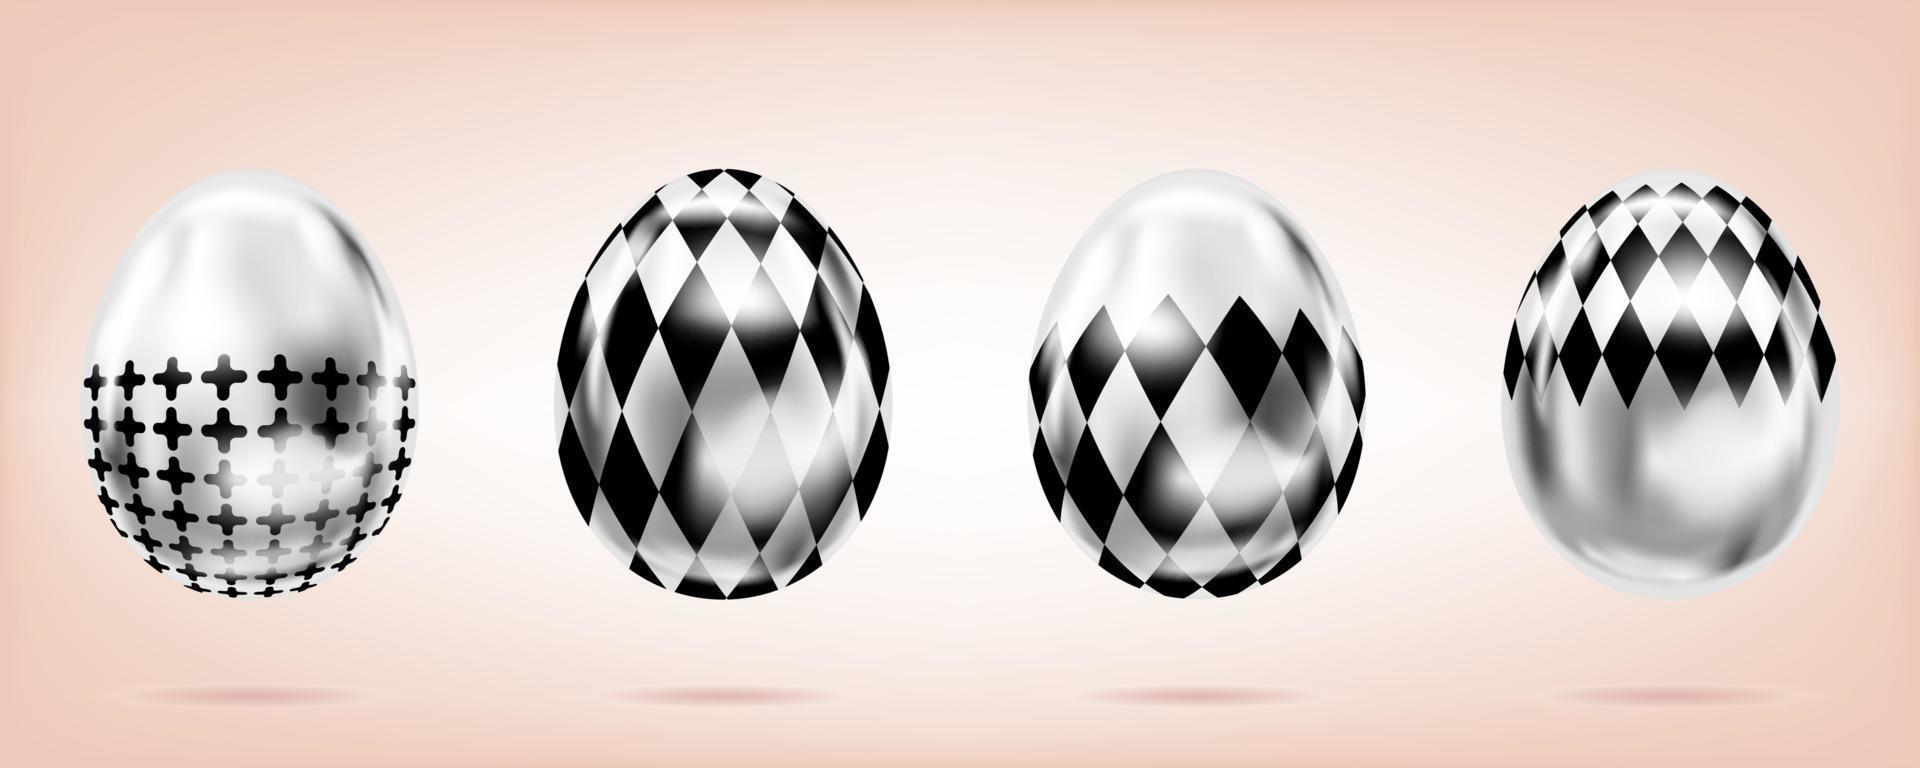 quattro argento uova su il rosa sfondo. isolato oggetti per Pasqua. attraversare e domino rombo ornato vettore